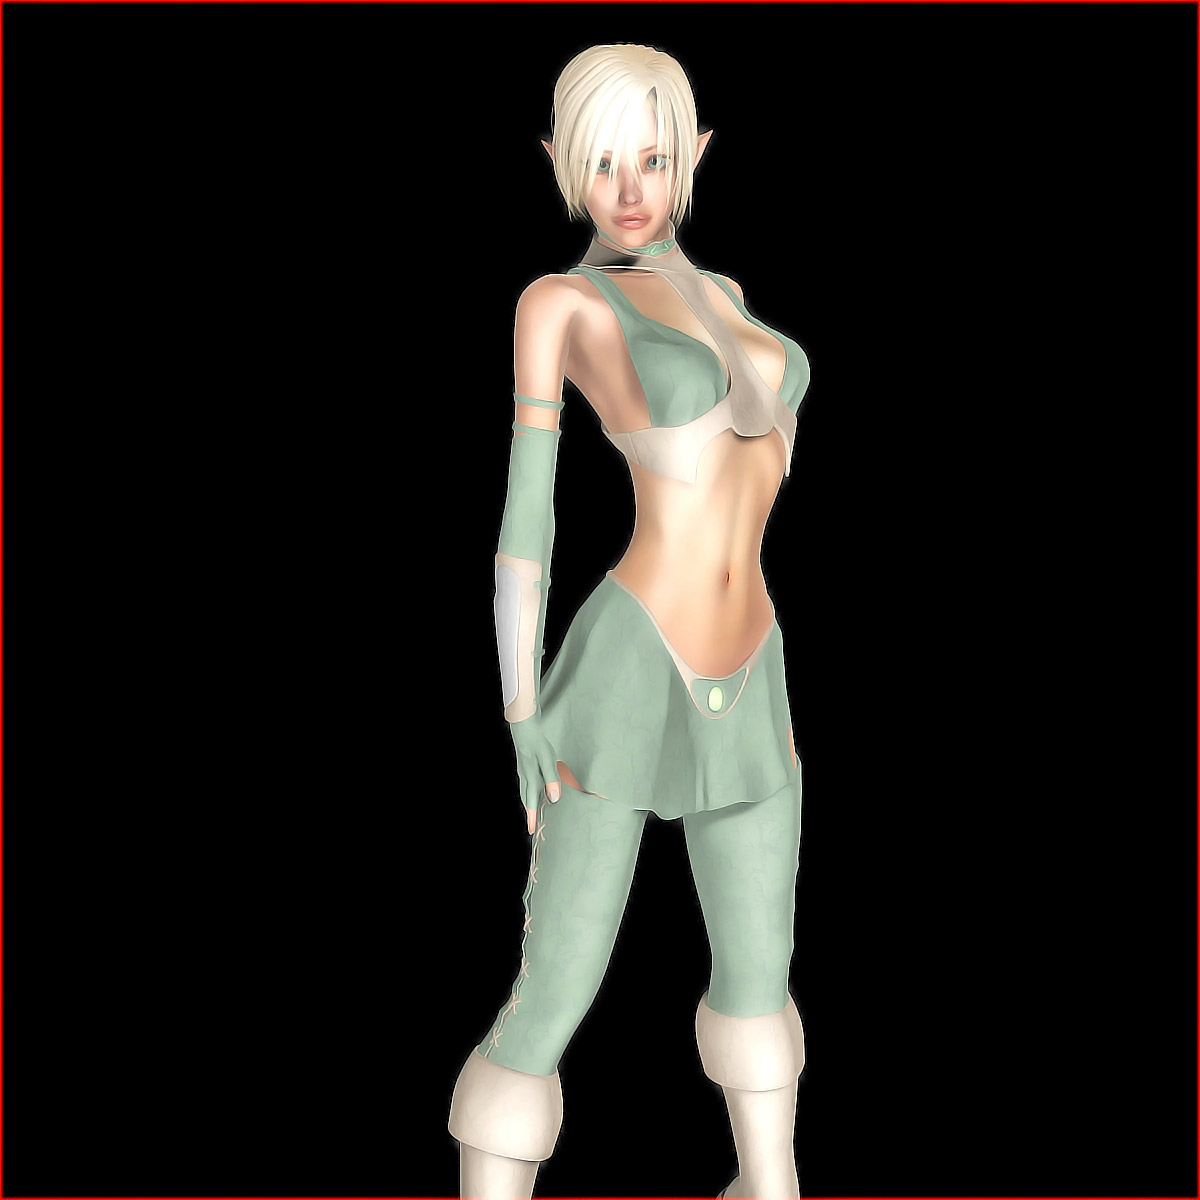 Sexy Alien 3d - Fierce giant uses a hot alien girl for a sex toy | 3dwerewolfporn.com